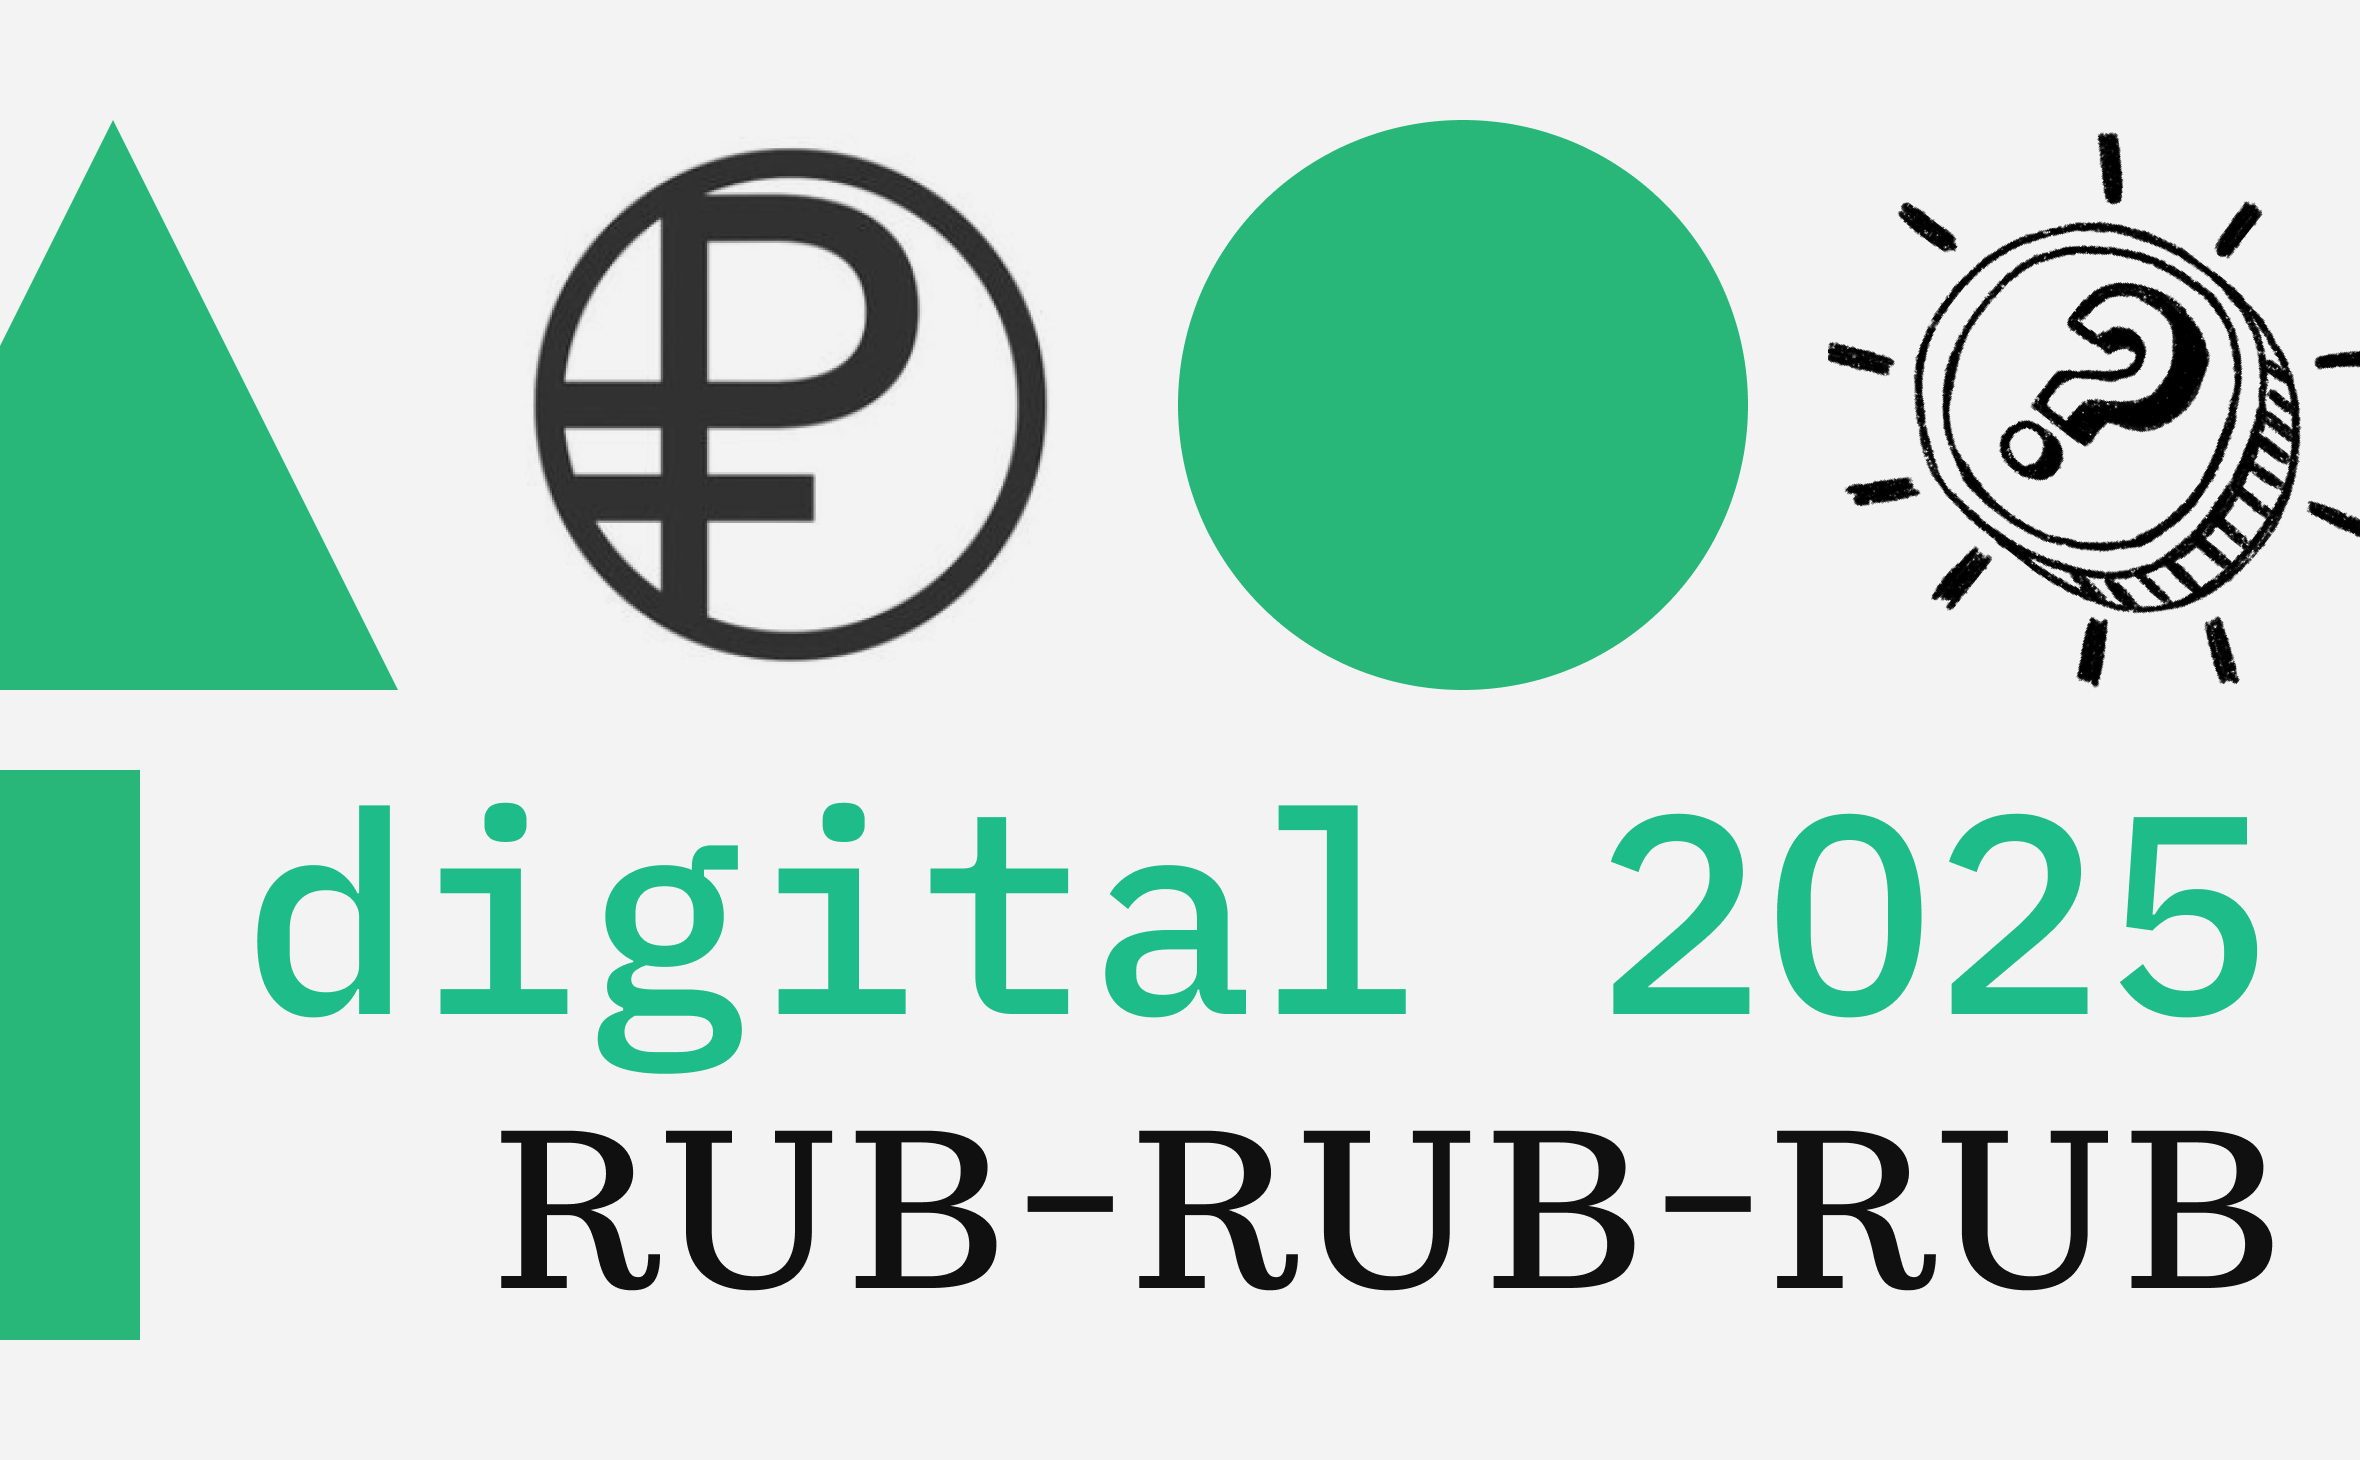 Массовое внедрение цифрового рубля ожидается в 2025 году. Каковы риски